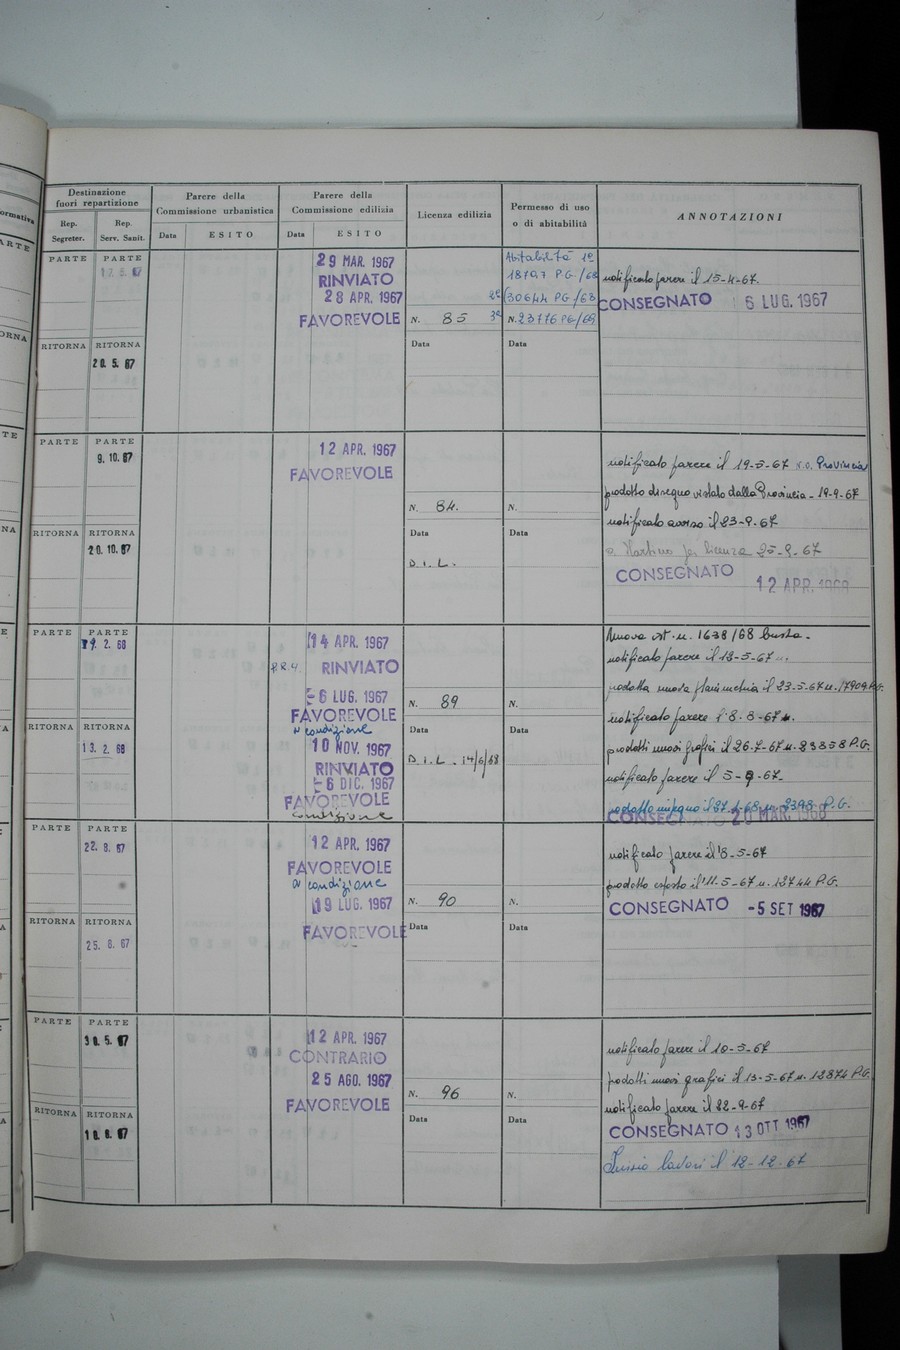 Foto del lato destro del registro con i dati della pratica 88/1967